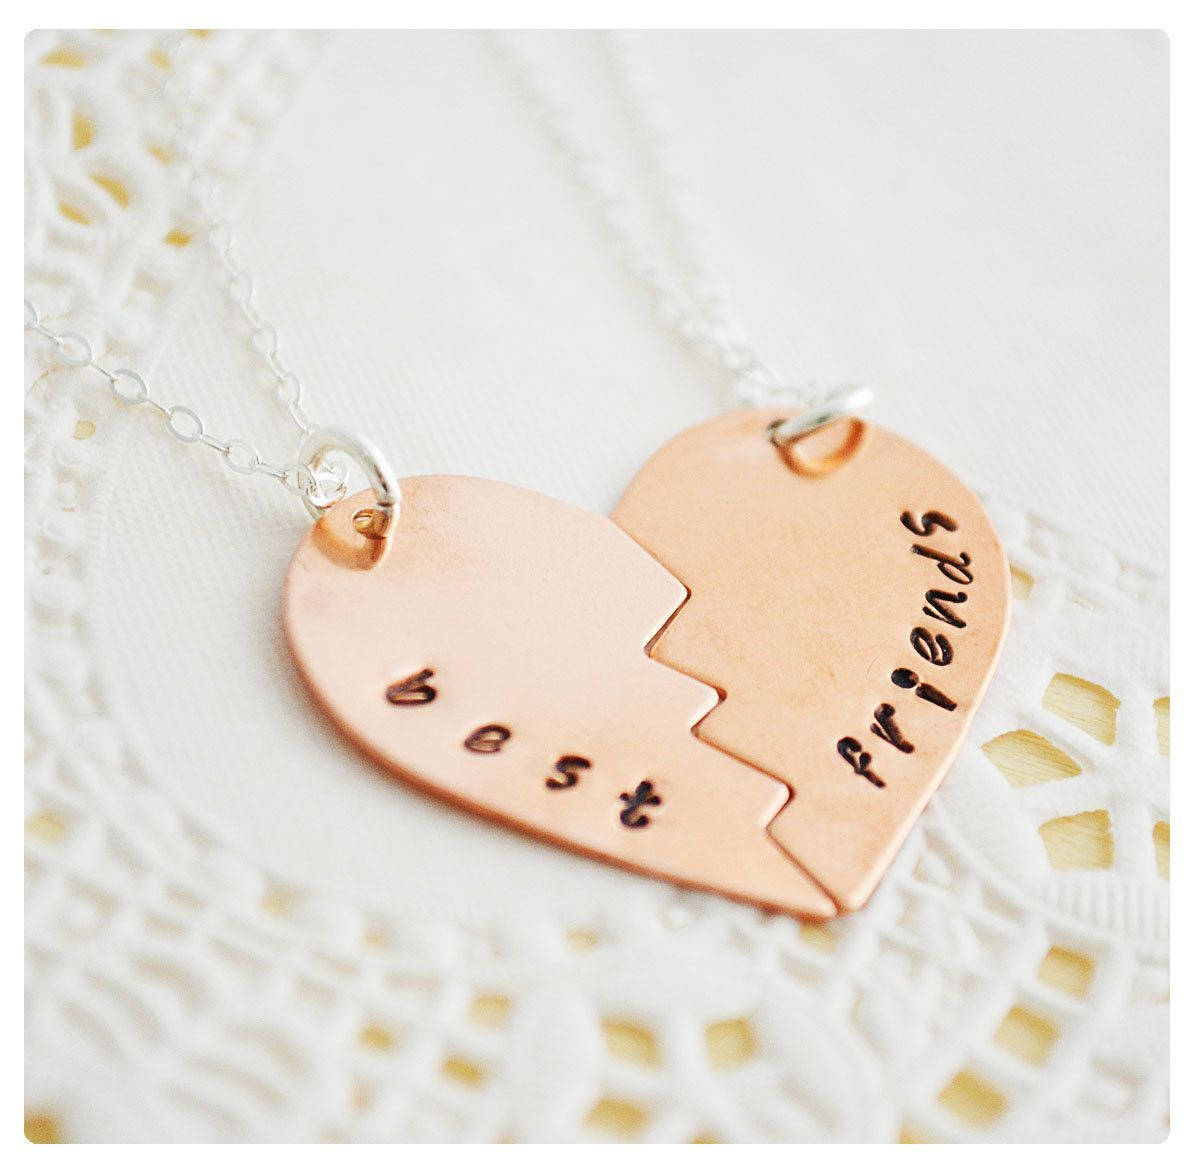 Download Cute Best Friend Heart Necklace Wallpaper